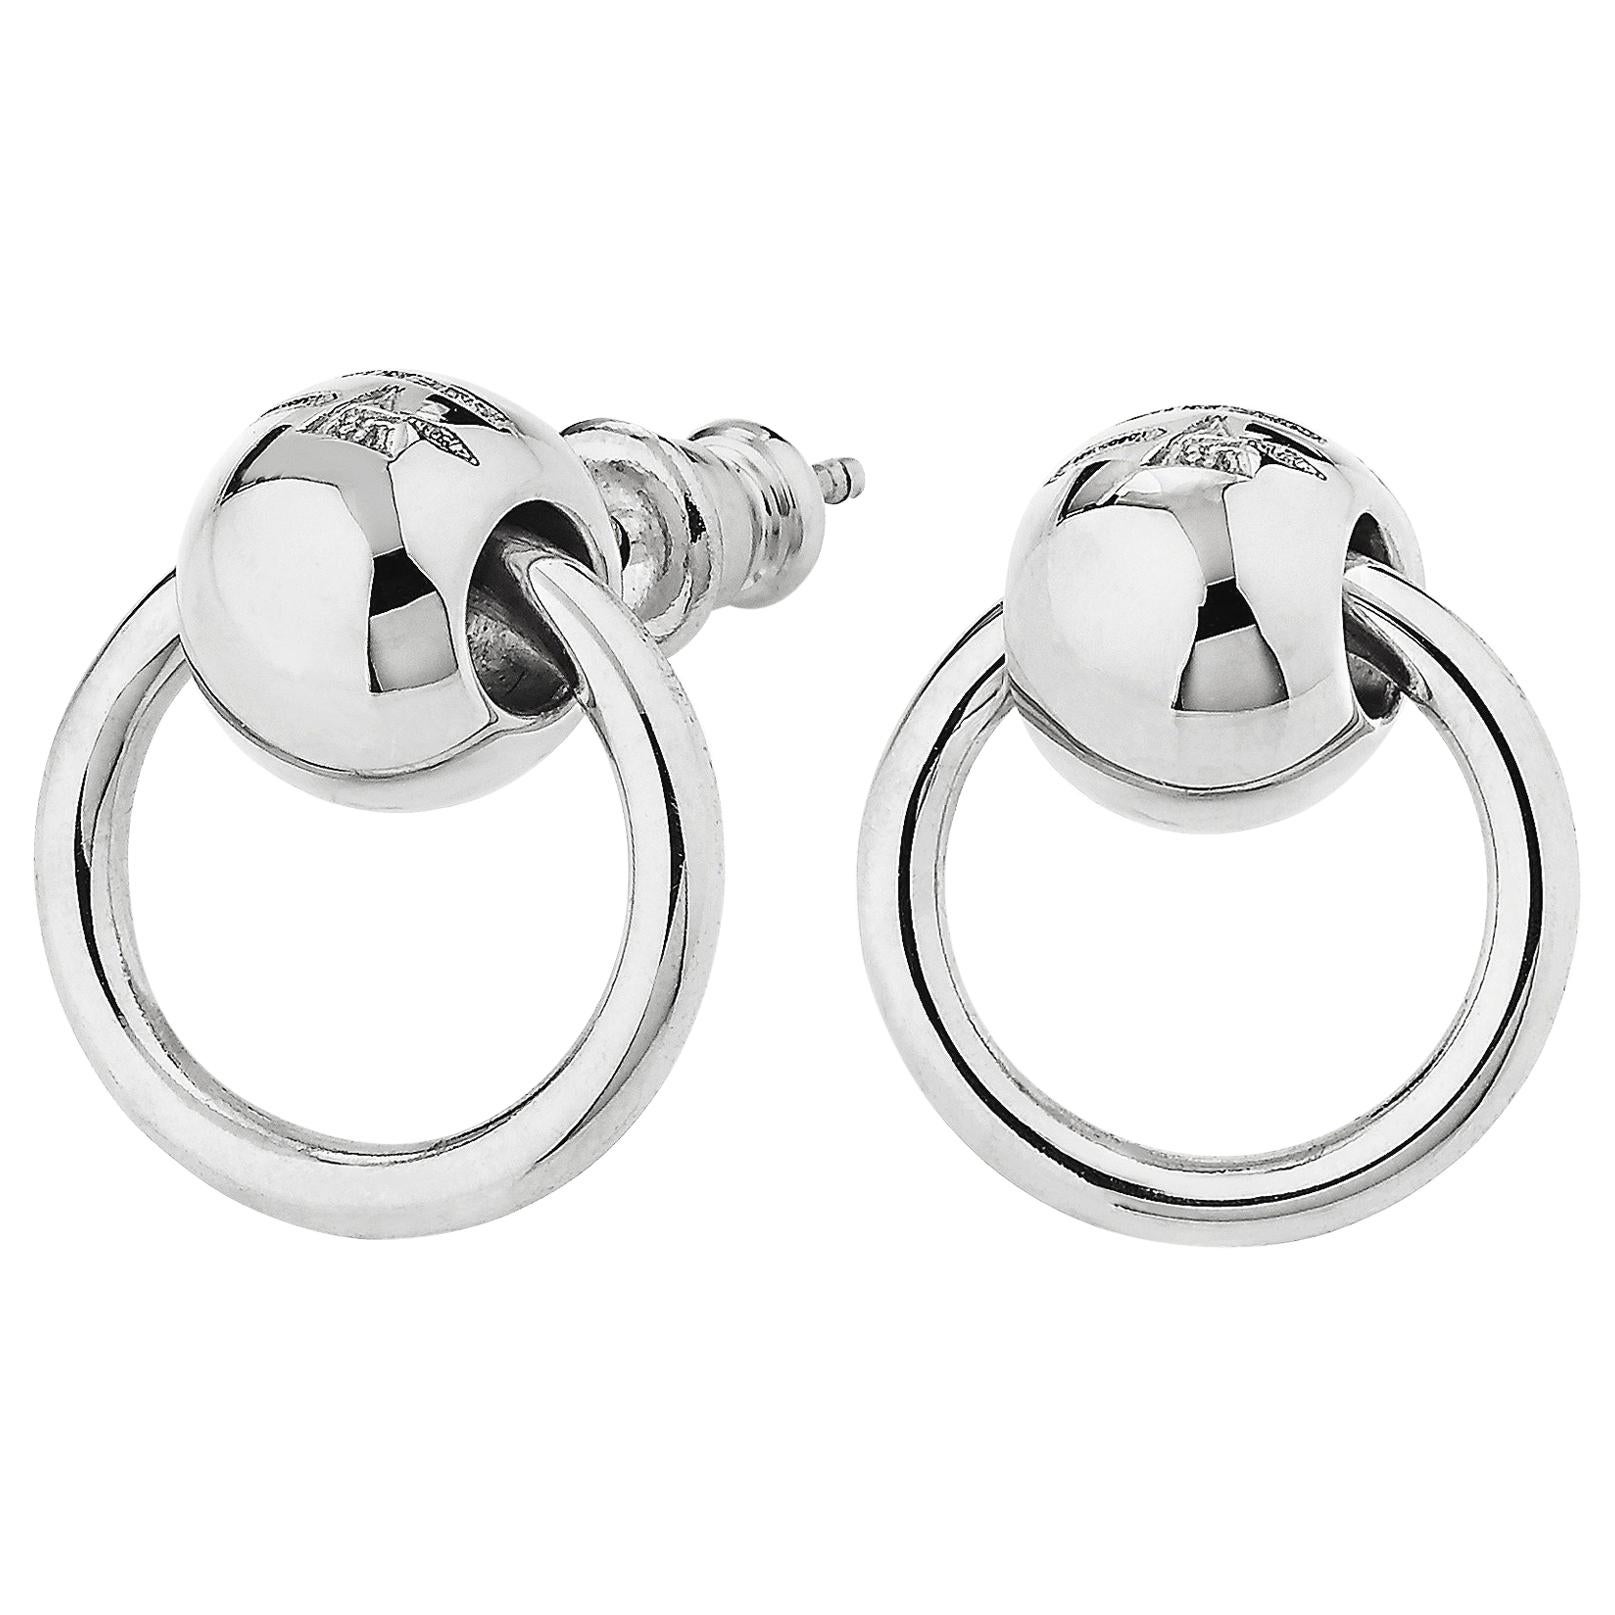 Betony Vernon "O-Ring Earrings" Sterling Silver 925 in Stock